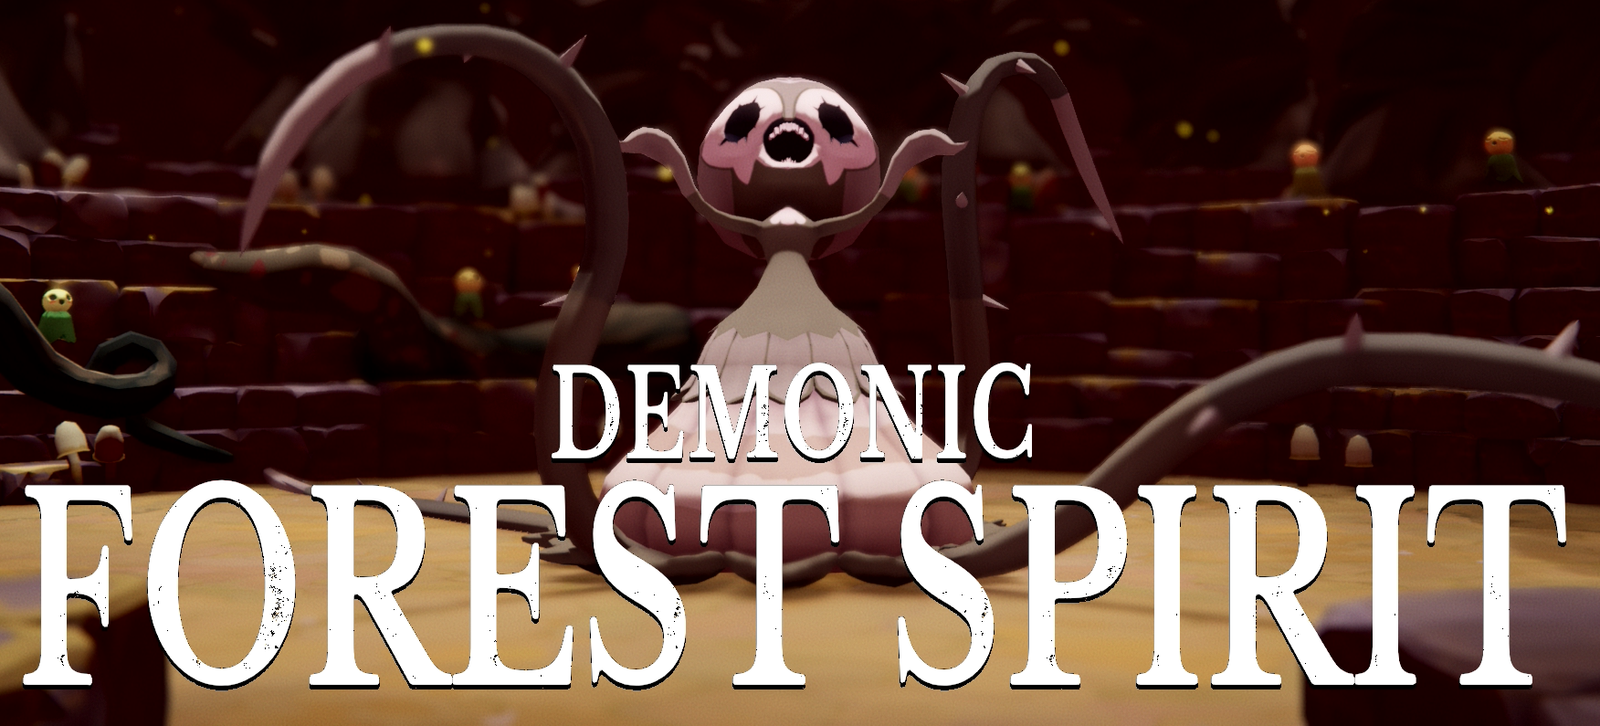 Demonic Forest Spirit(Deaths Door)